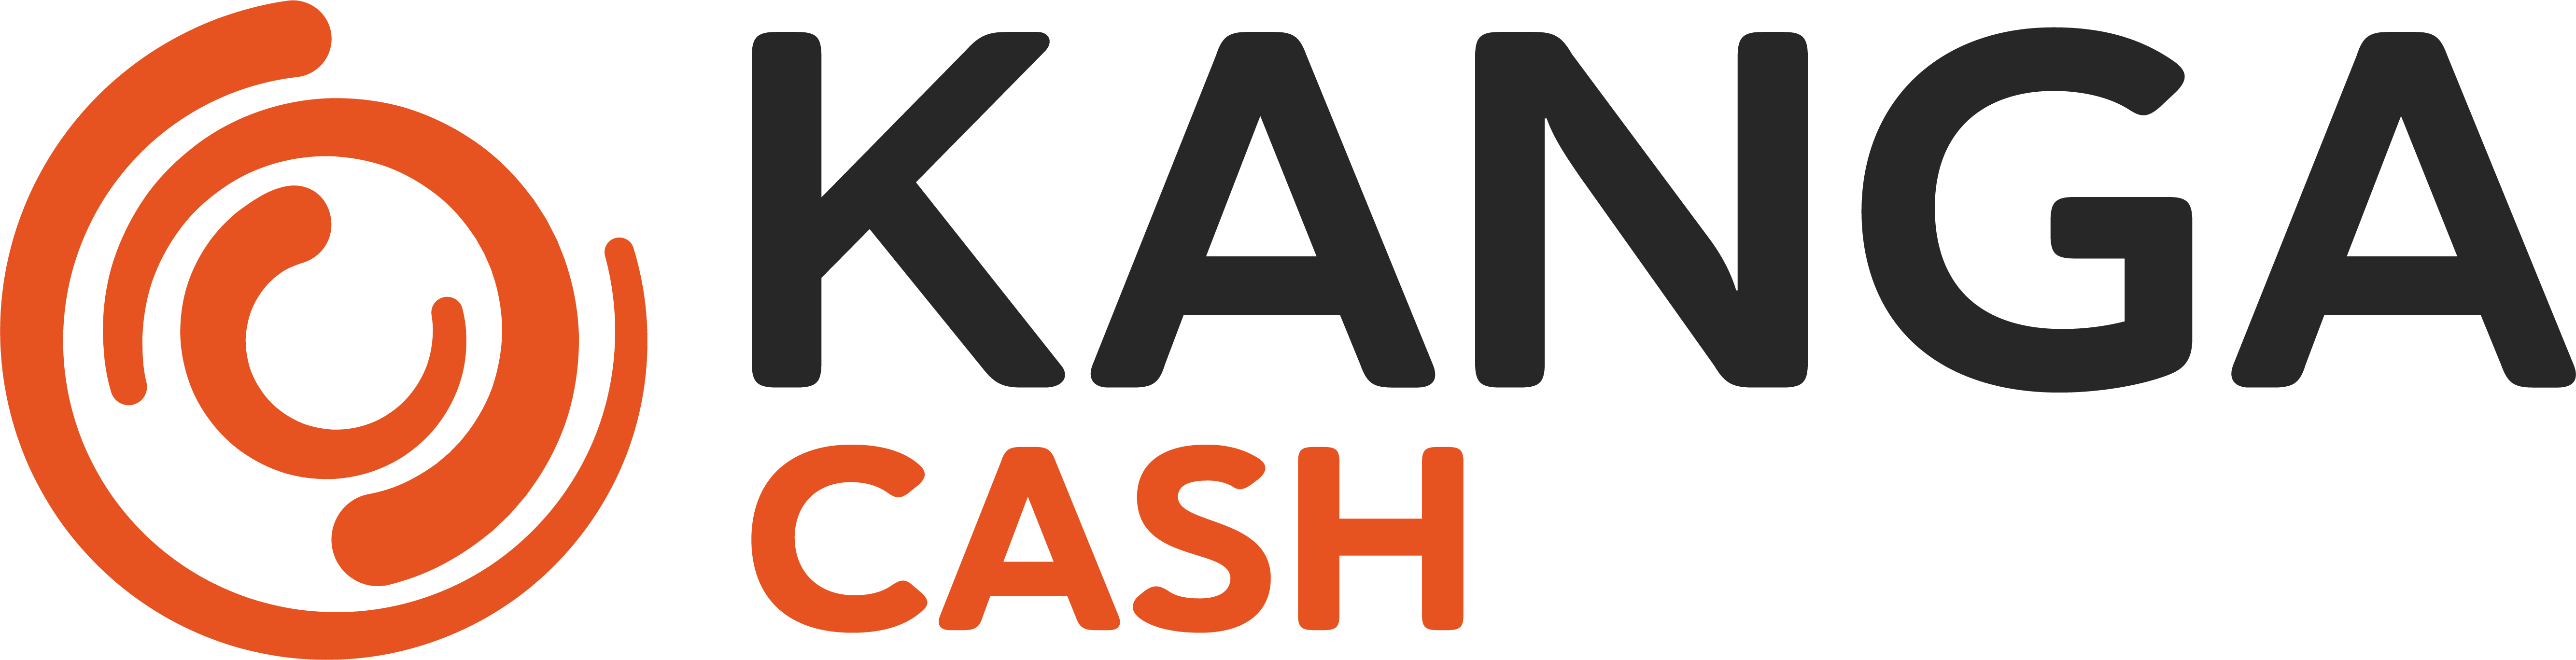 logo kanga cash